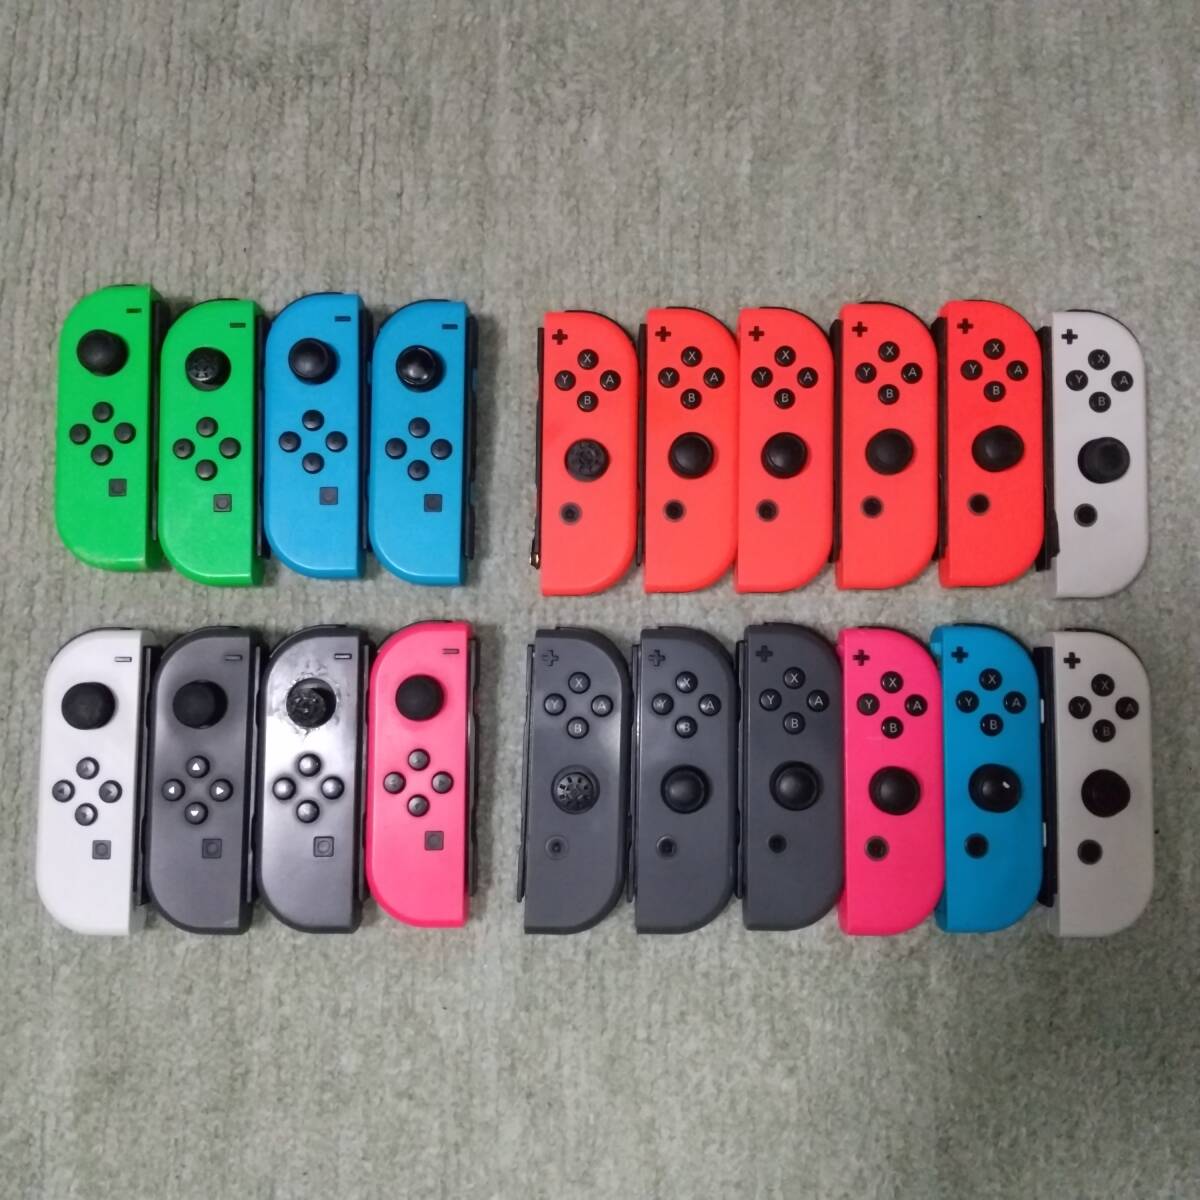 [ Junk * работоспособность не проверялась ] nintendo переключатель Joy темно синий 20 шт продажа комплектом 1 иен старт & бесплатная доставка Nintendo Switch Joy-Con nintendo оригинальный товар 